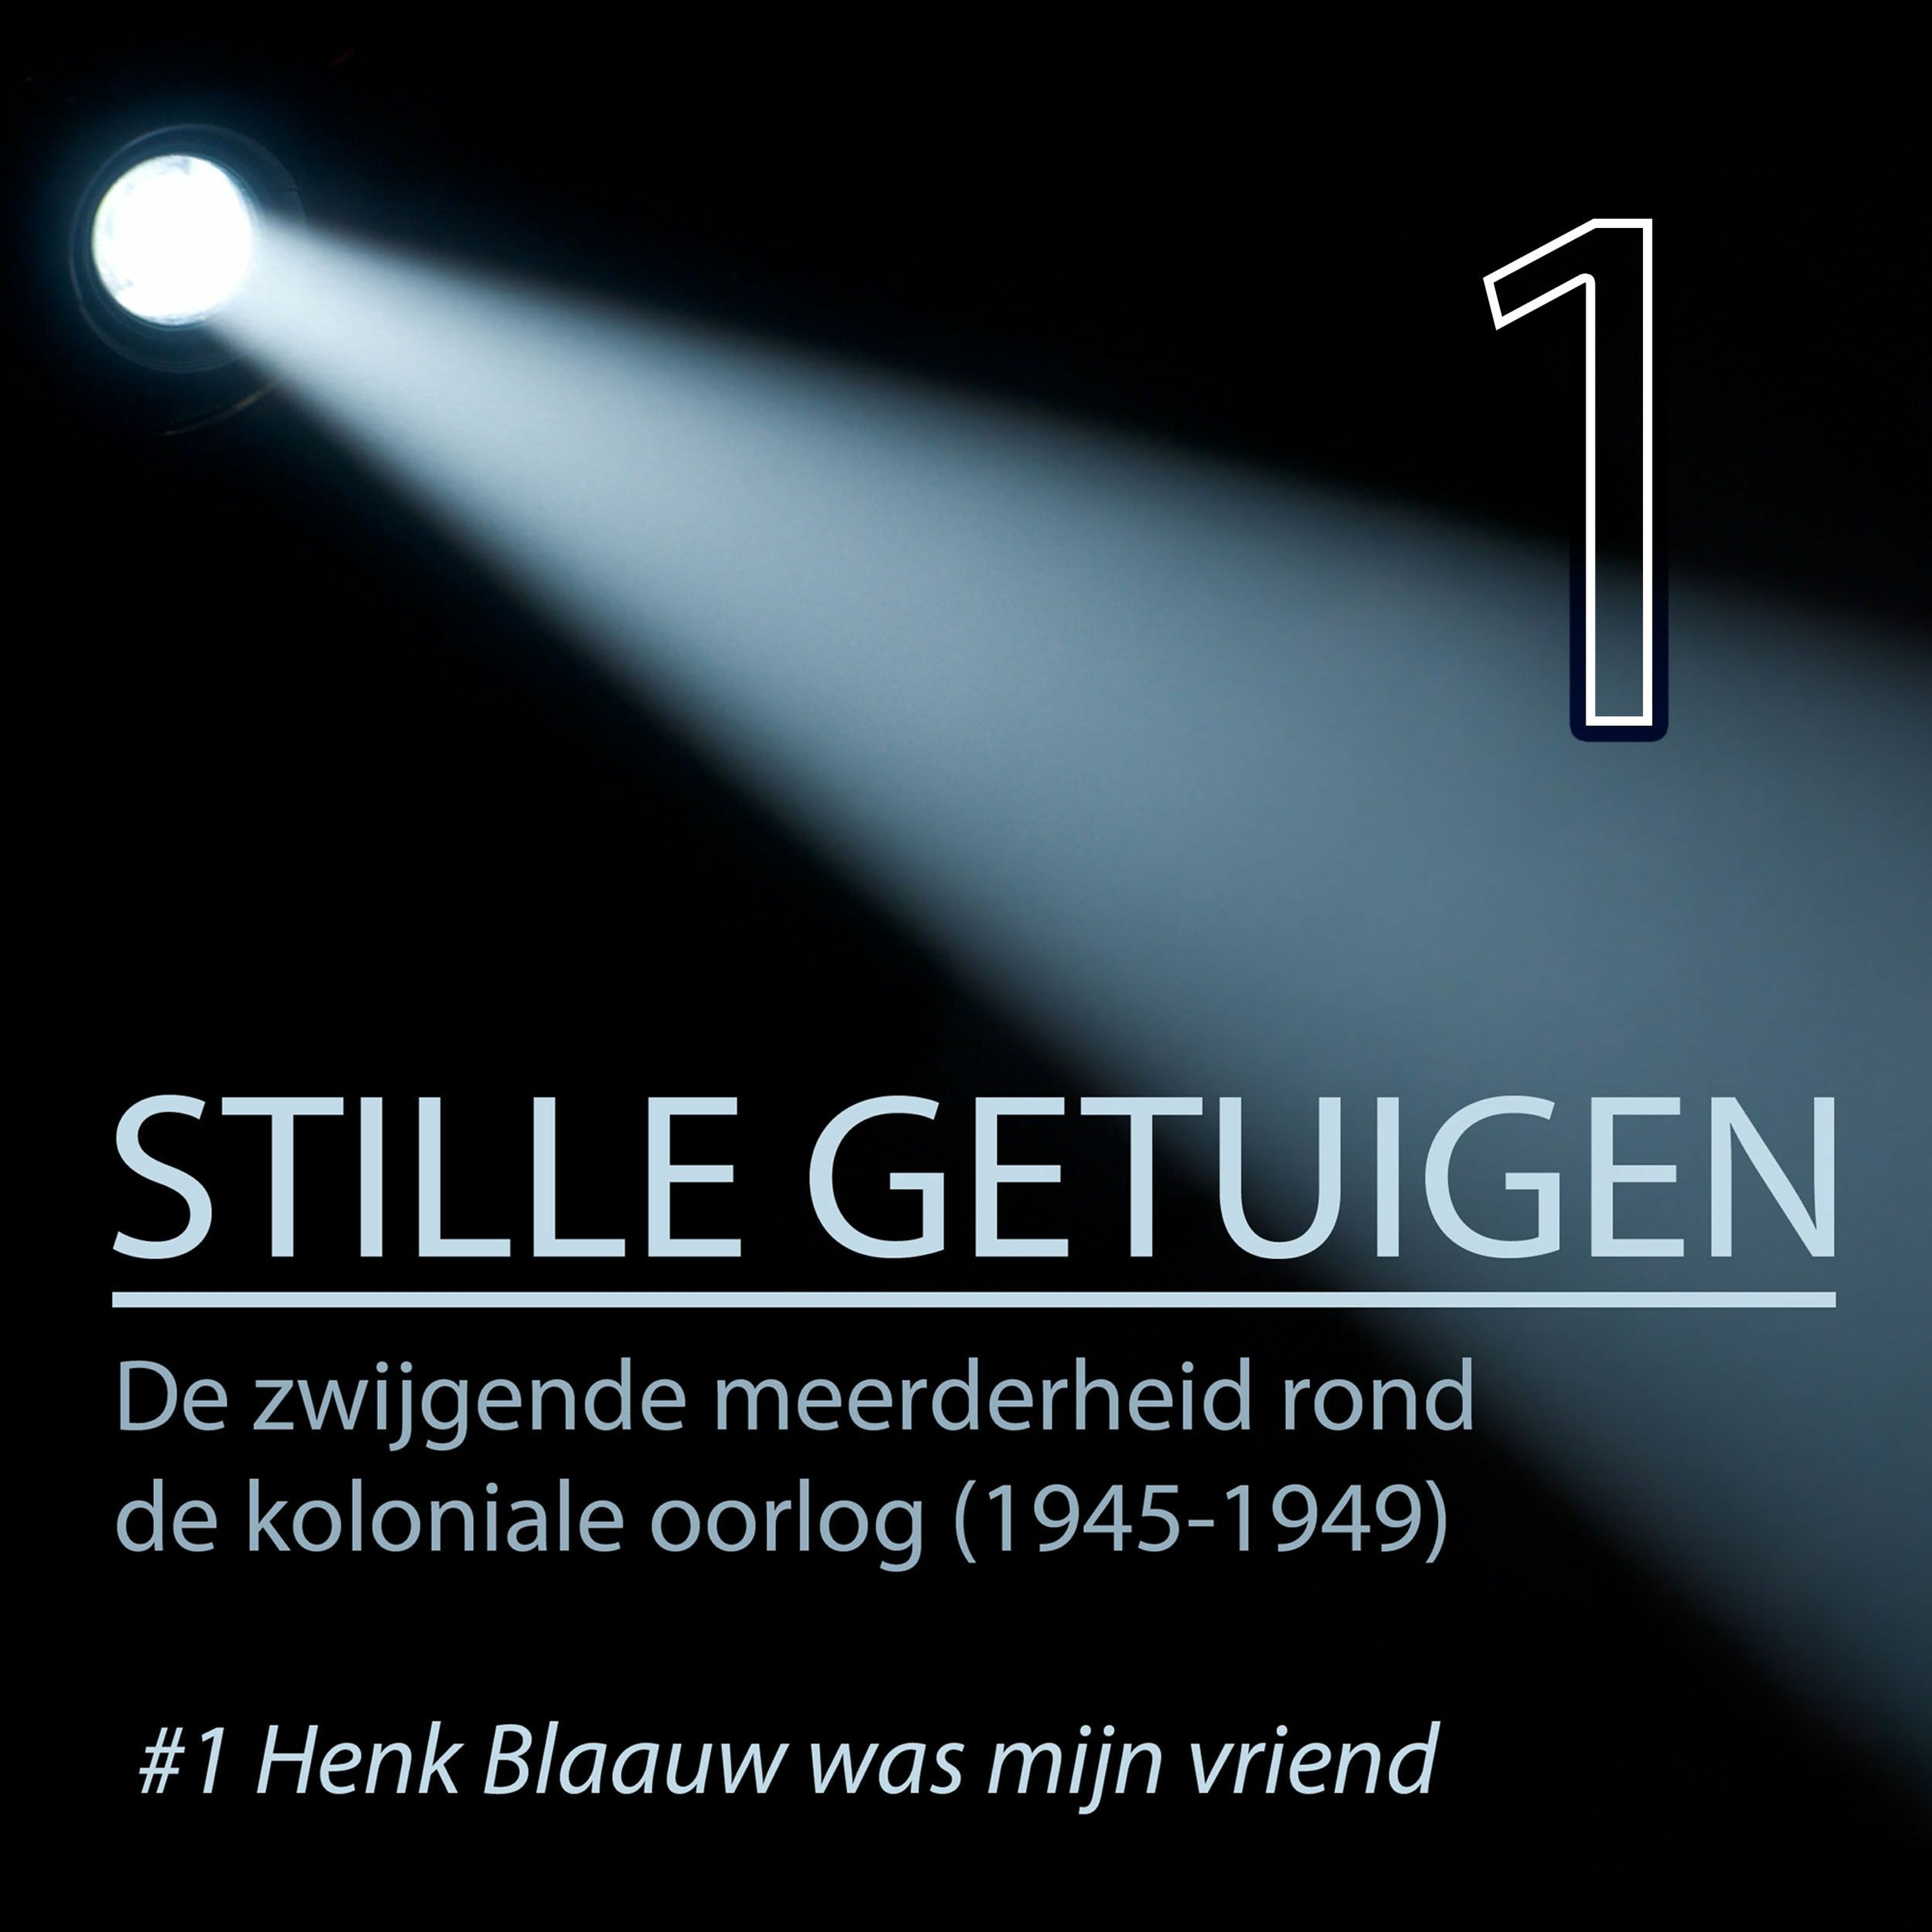 Stille getuigen: #1 Henk Blaauw was mijn vriend